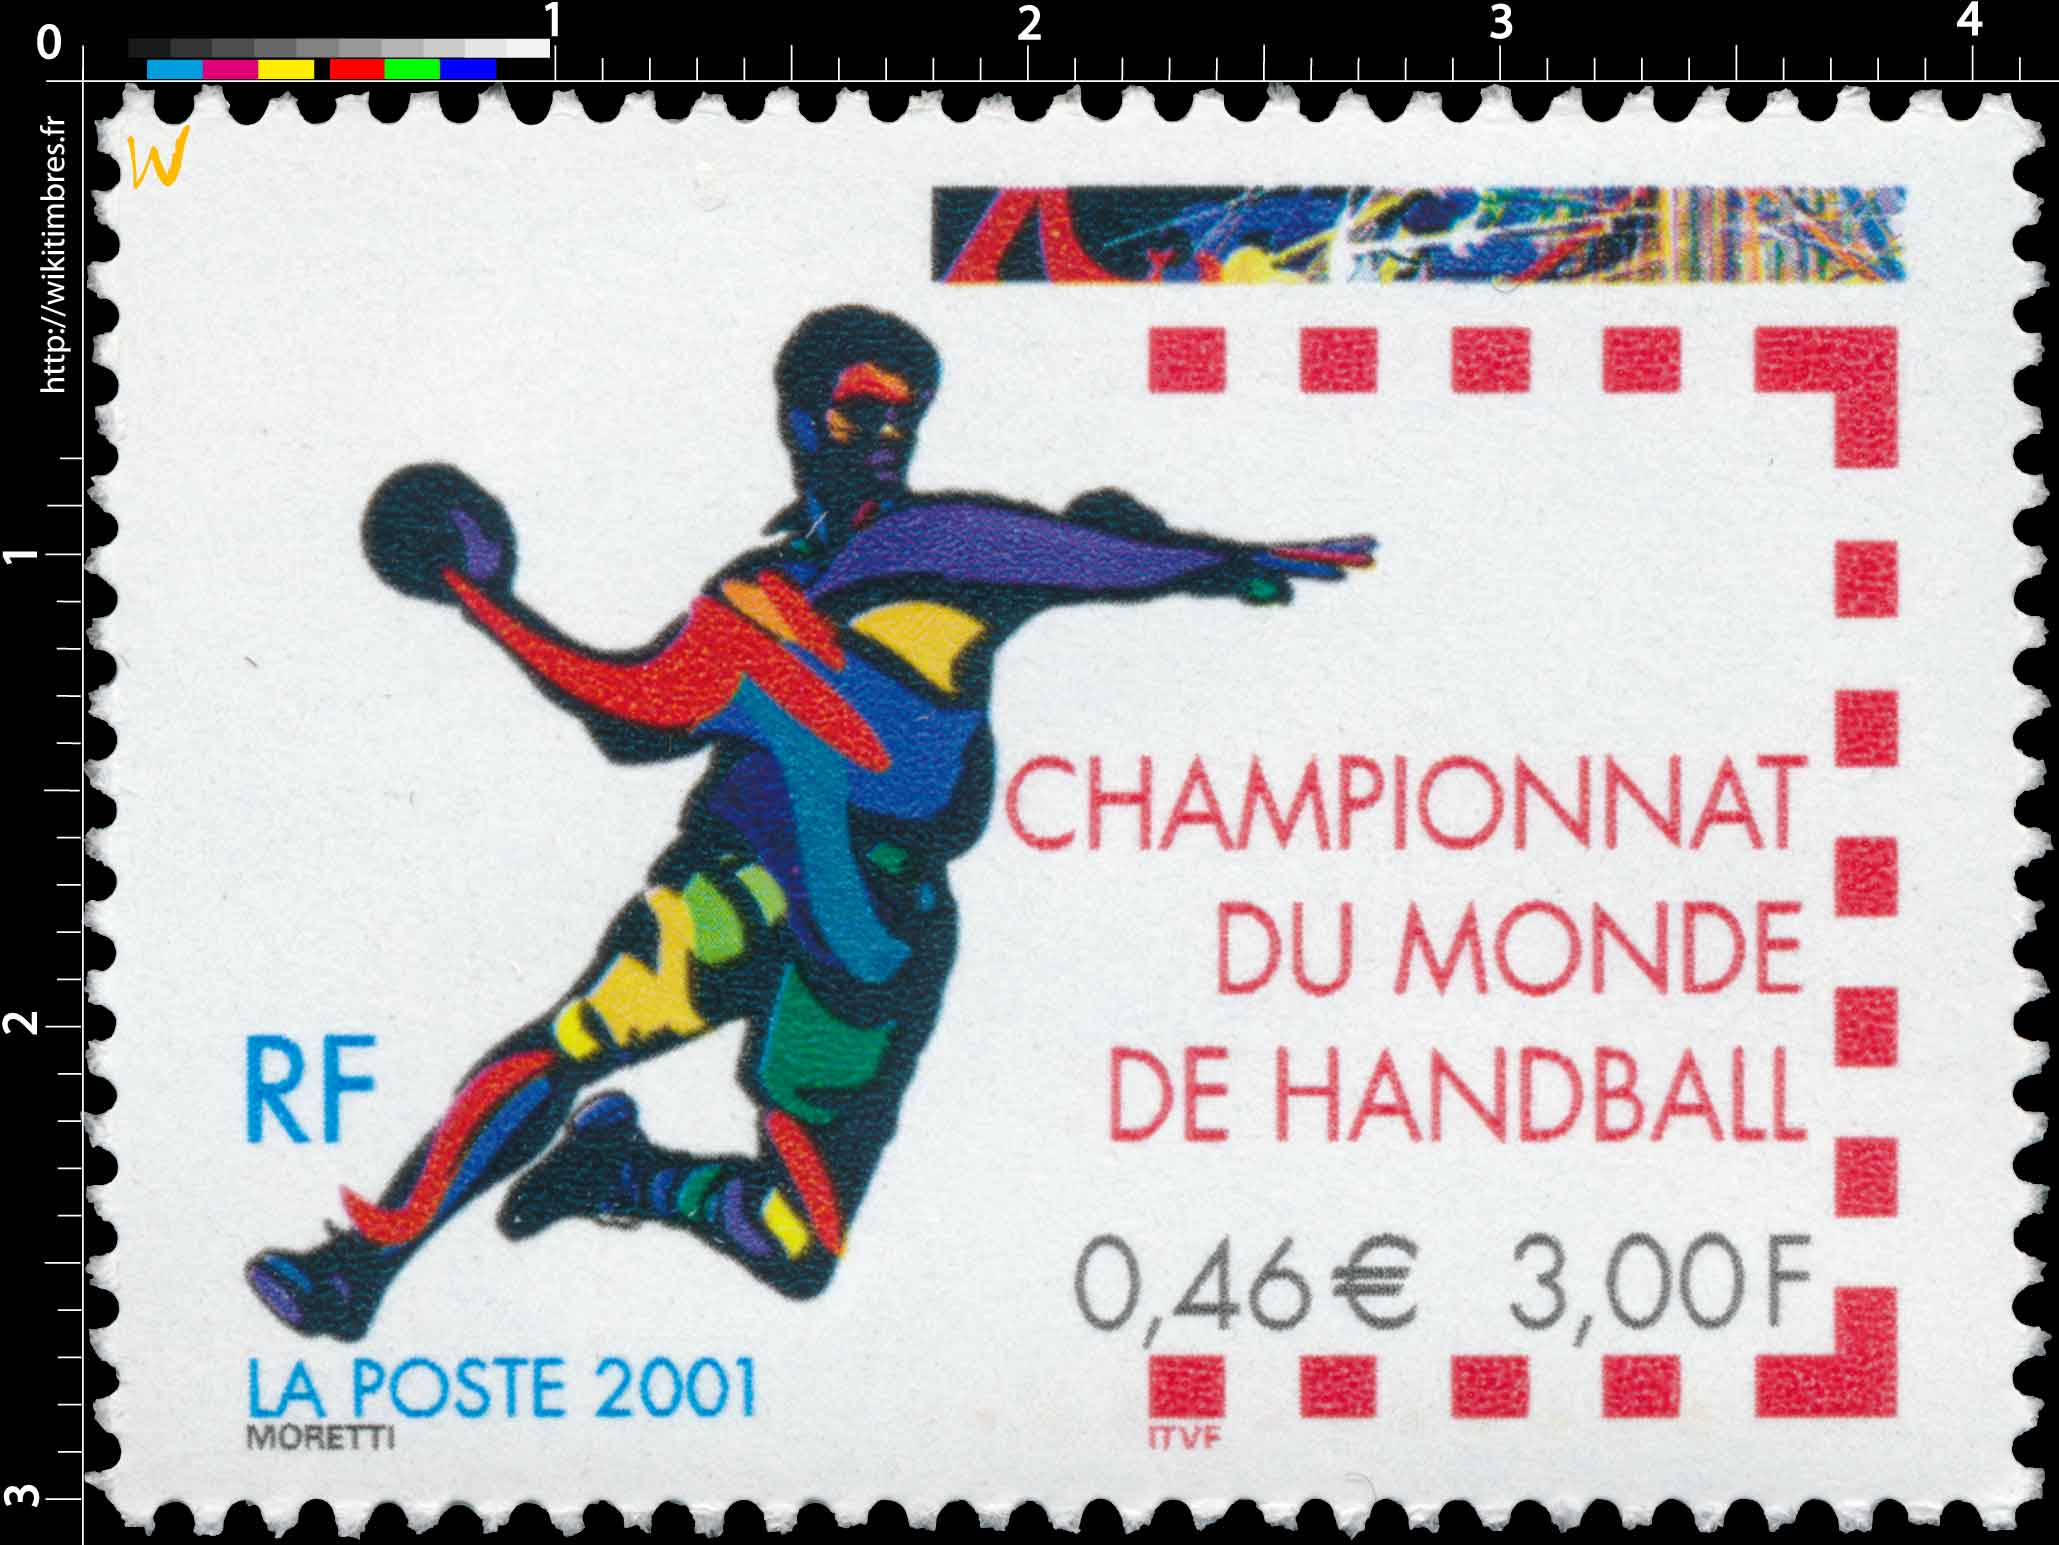 2001 CHAMPIONNAT DU MONDE DE HANDBALL